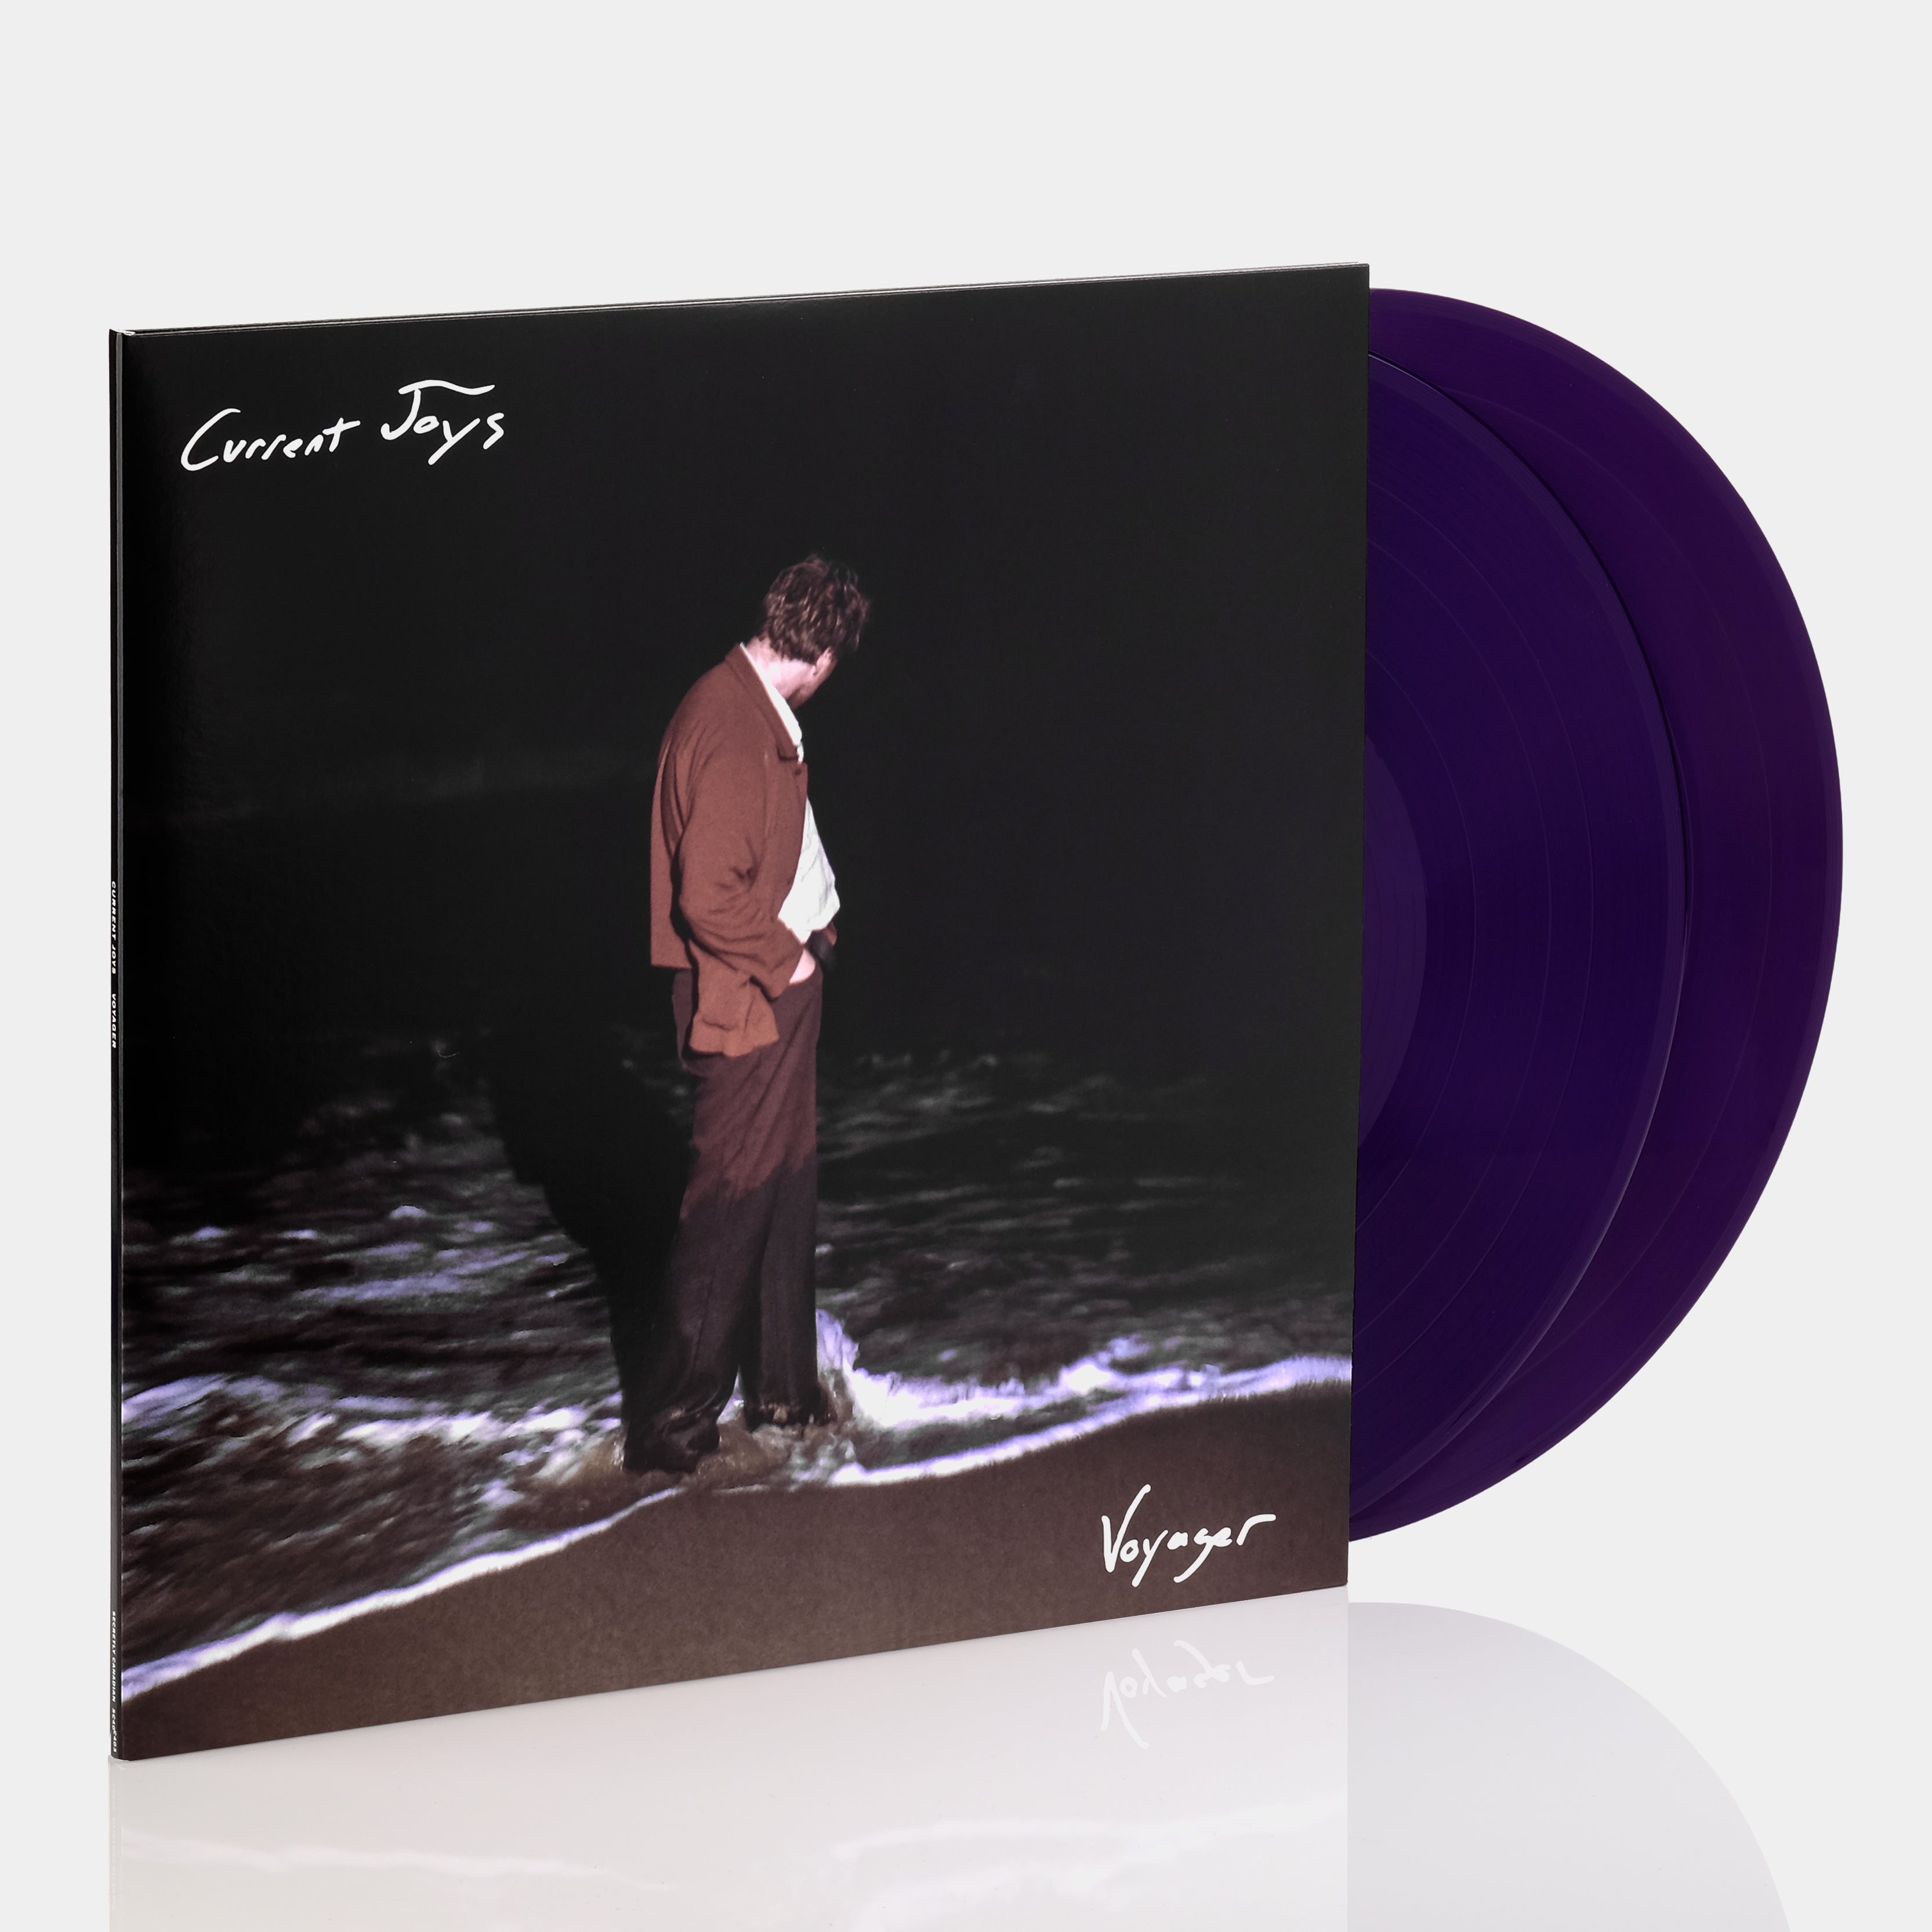 Current Joys - Voyager 2xLP Opaque Purple Vinyl Record